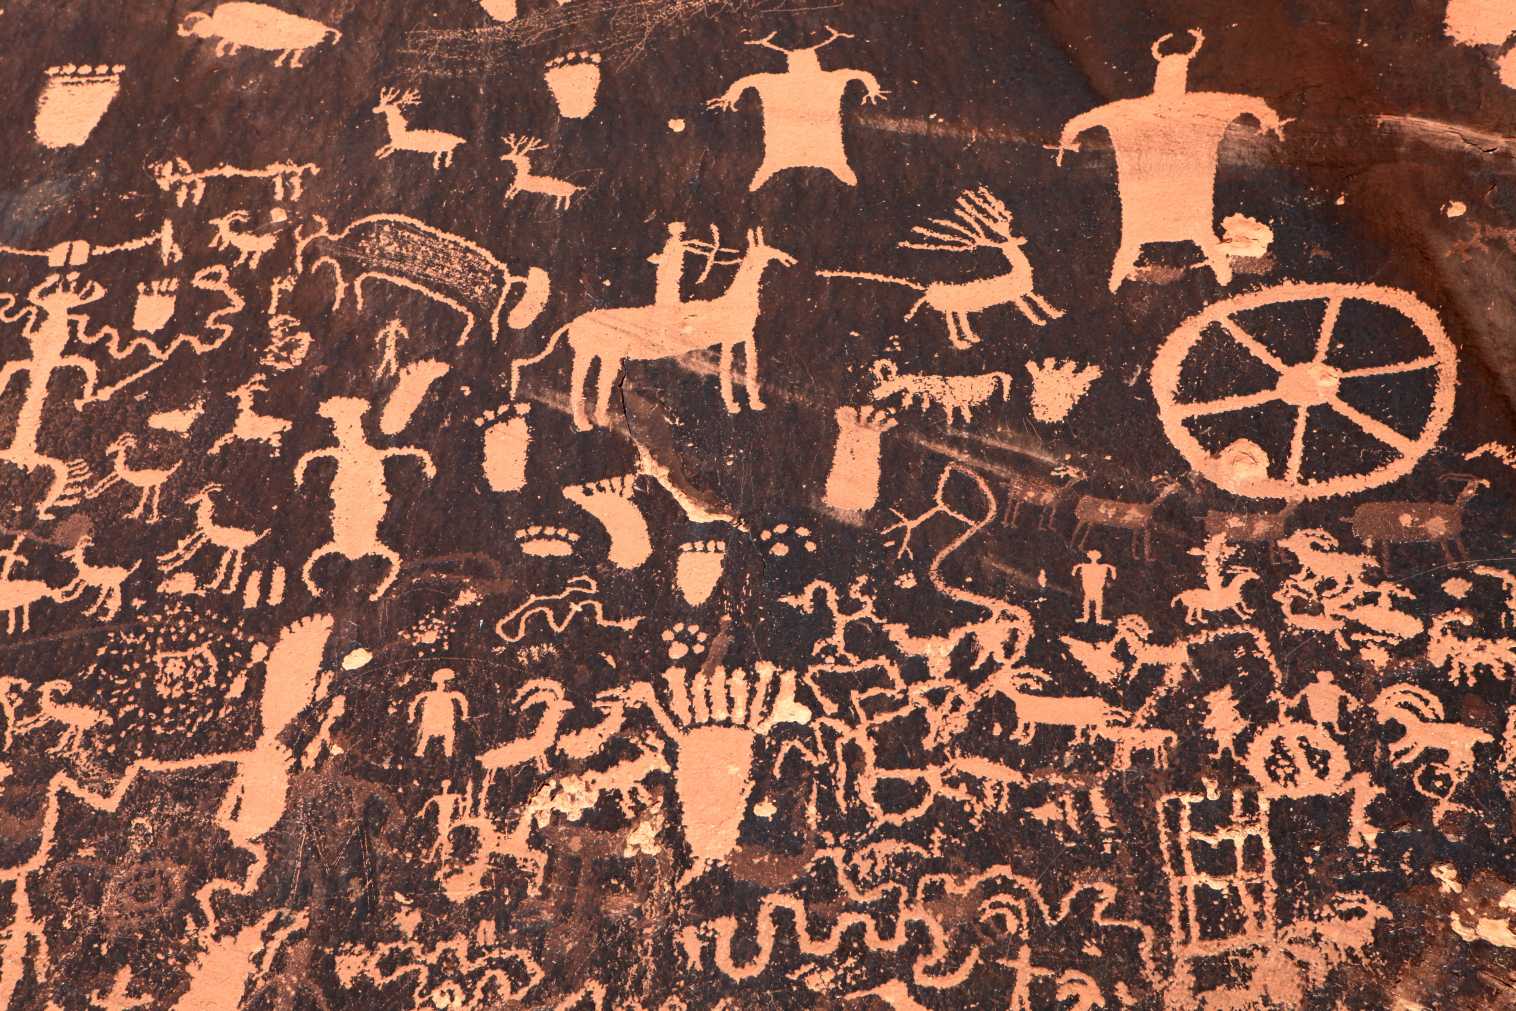 Anasazi-rotstekeningen in het staatspark Newspaper Rock, Utah, VS. Helaas hadden de Anasazi geen geschreven taal en is er niets bekend over de naam waarmee ze zichzelf noemden. © iStock